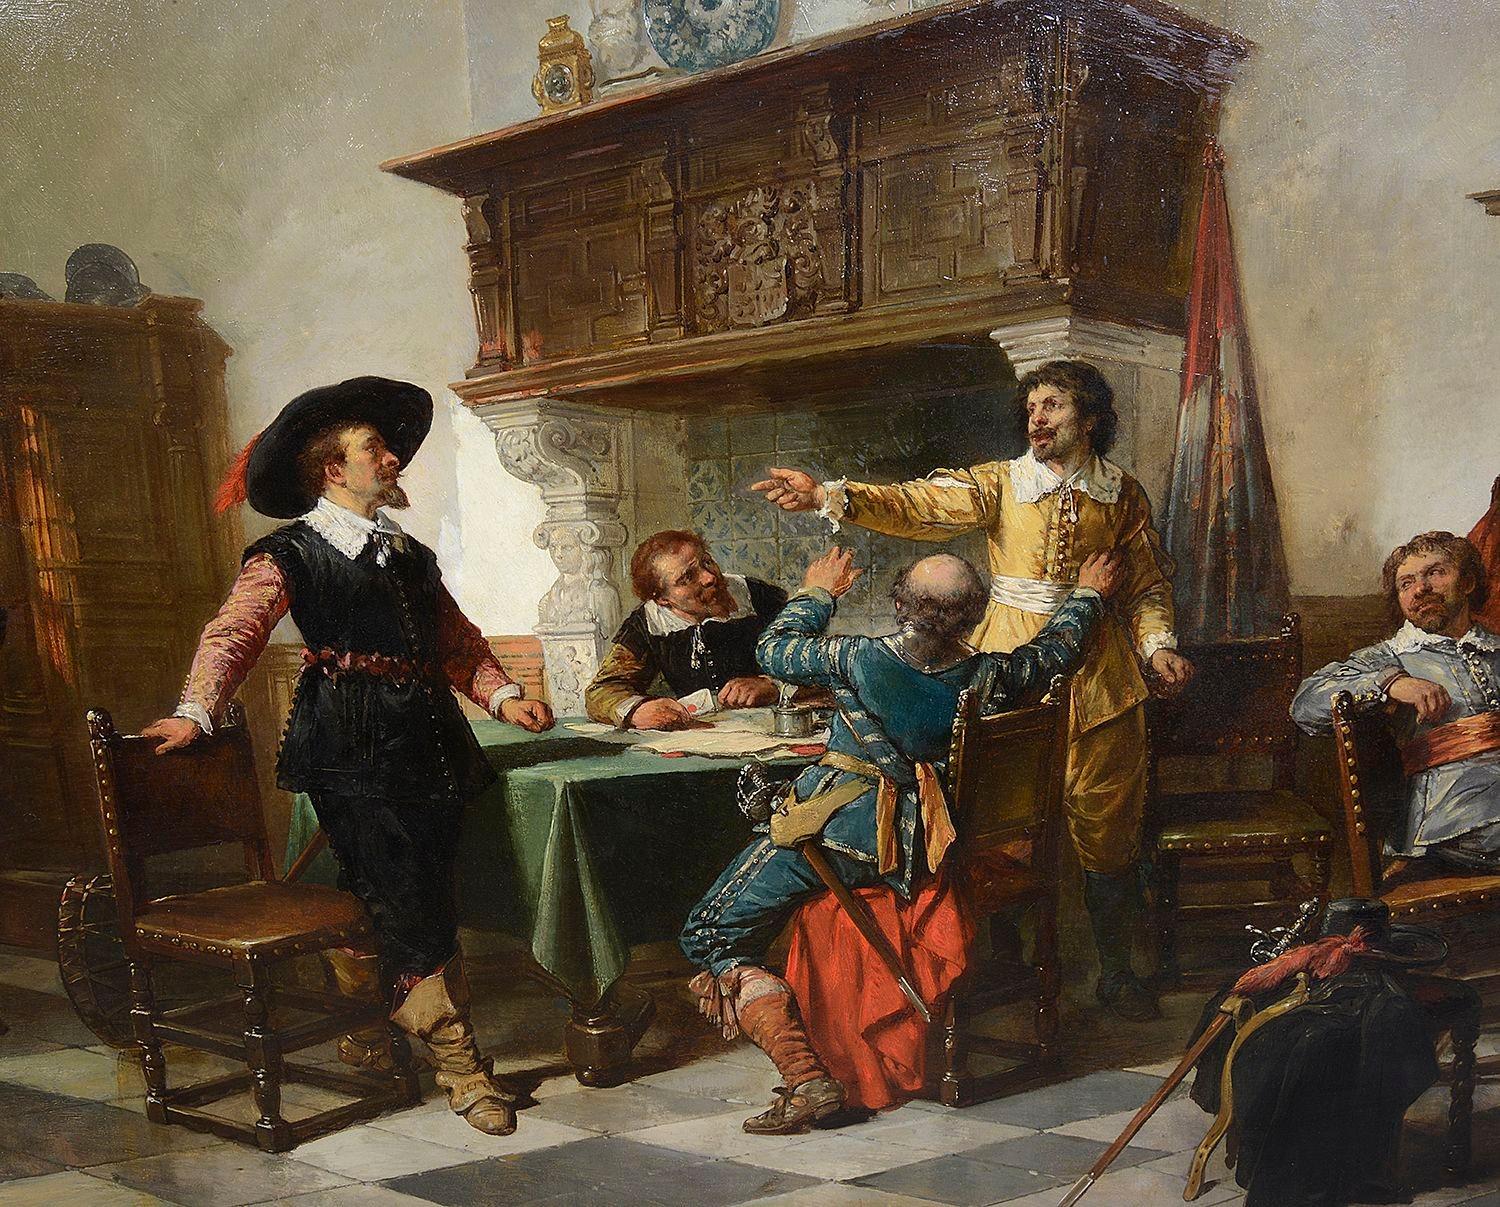 Huile sur toile, 'Le Councill de la guerre' Signé.

Herman Ten Kate était un peintre du XIXe siècle du genre historique néerlandais. Il était l'un des membres les plus éminents d'un groupe de peintres qui s'appuyaient largement sur les anciens